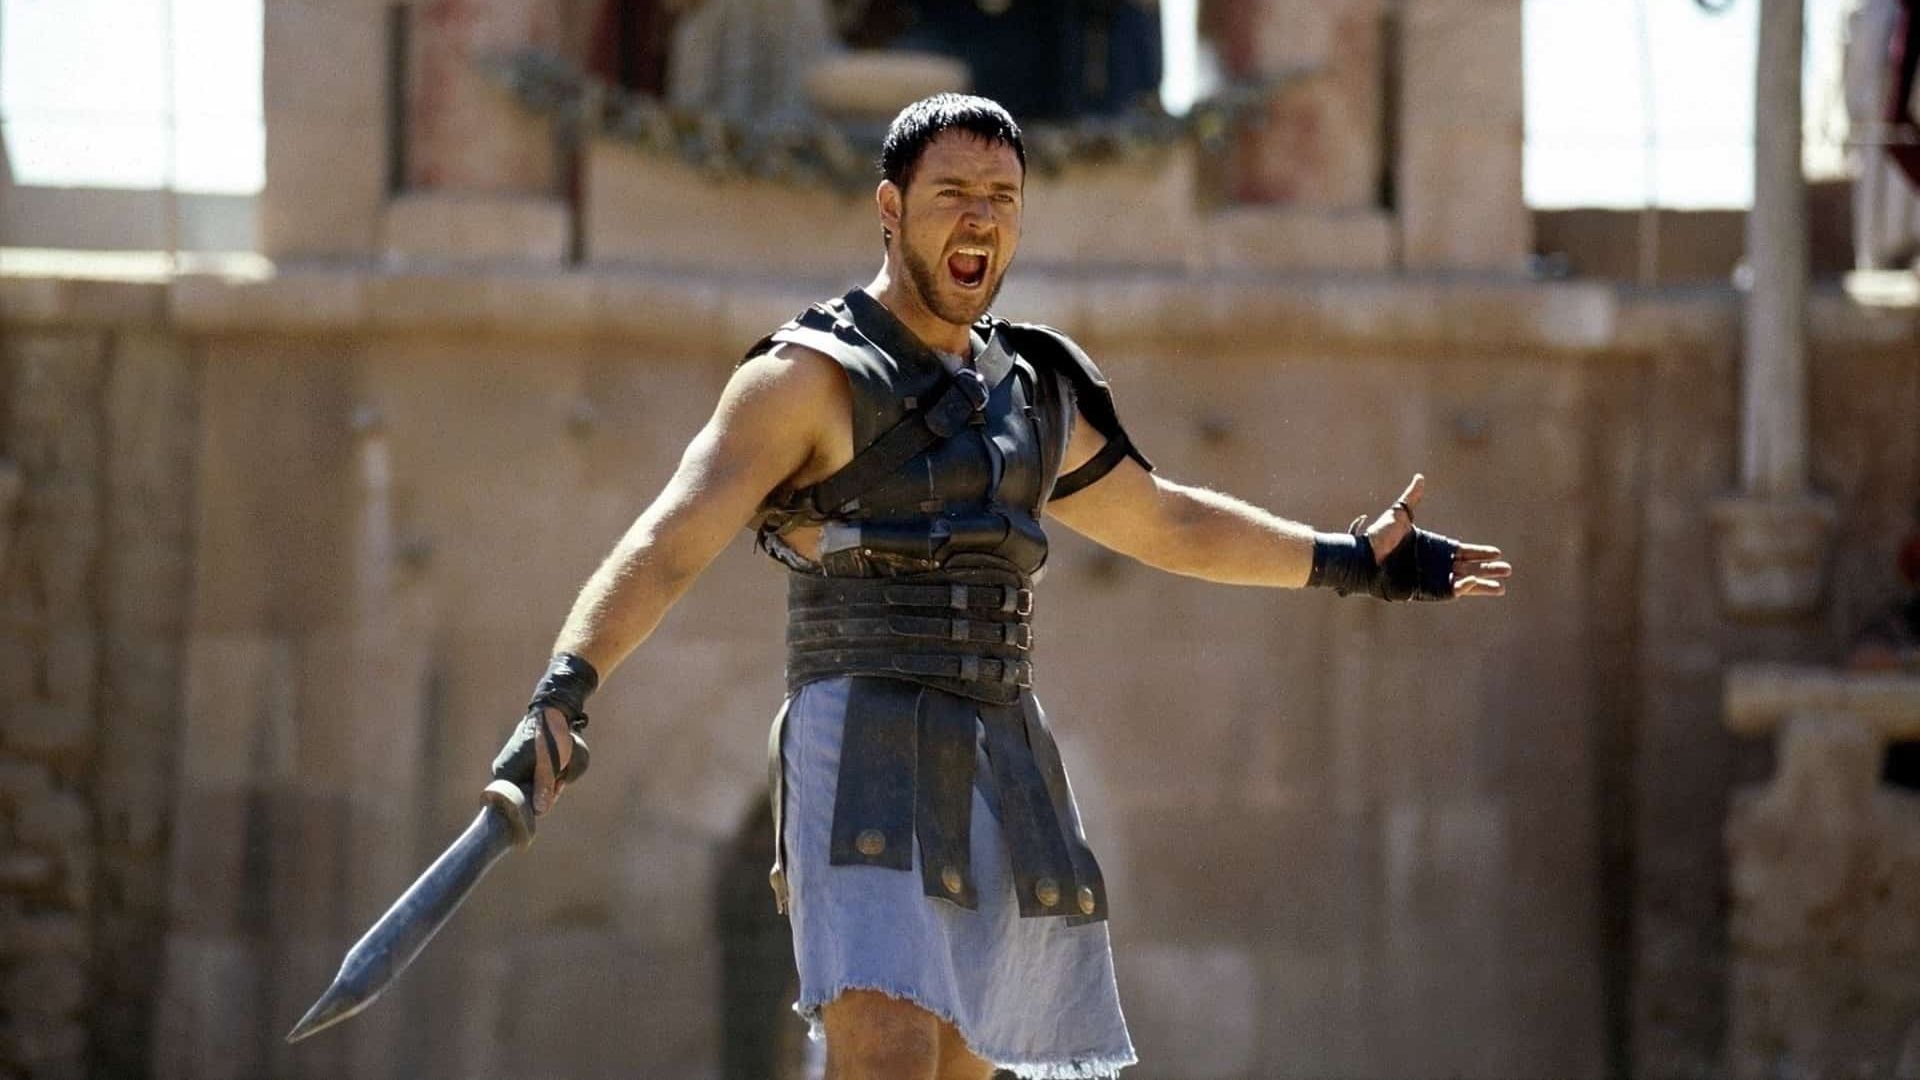 Gladiador, longa de 2000 com Russell Crowe, ganhará uma sequência em 2024, com Ridley Scott de volta à direção e Paul Mescal, de Aftersun, como protagonista (Foto: Divulgação)